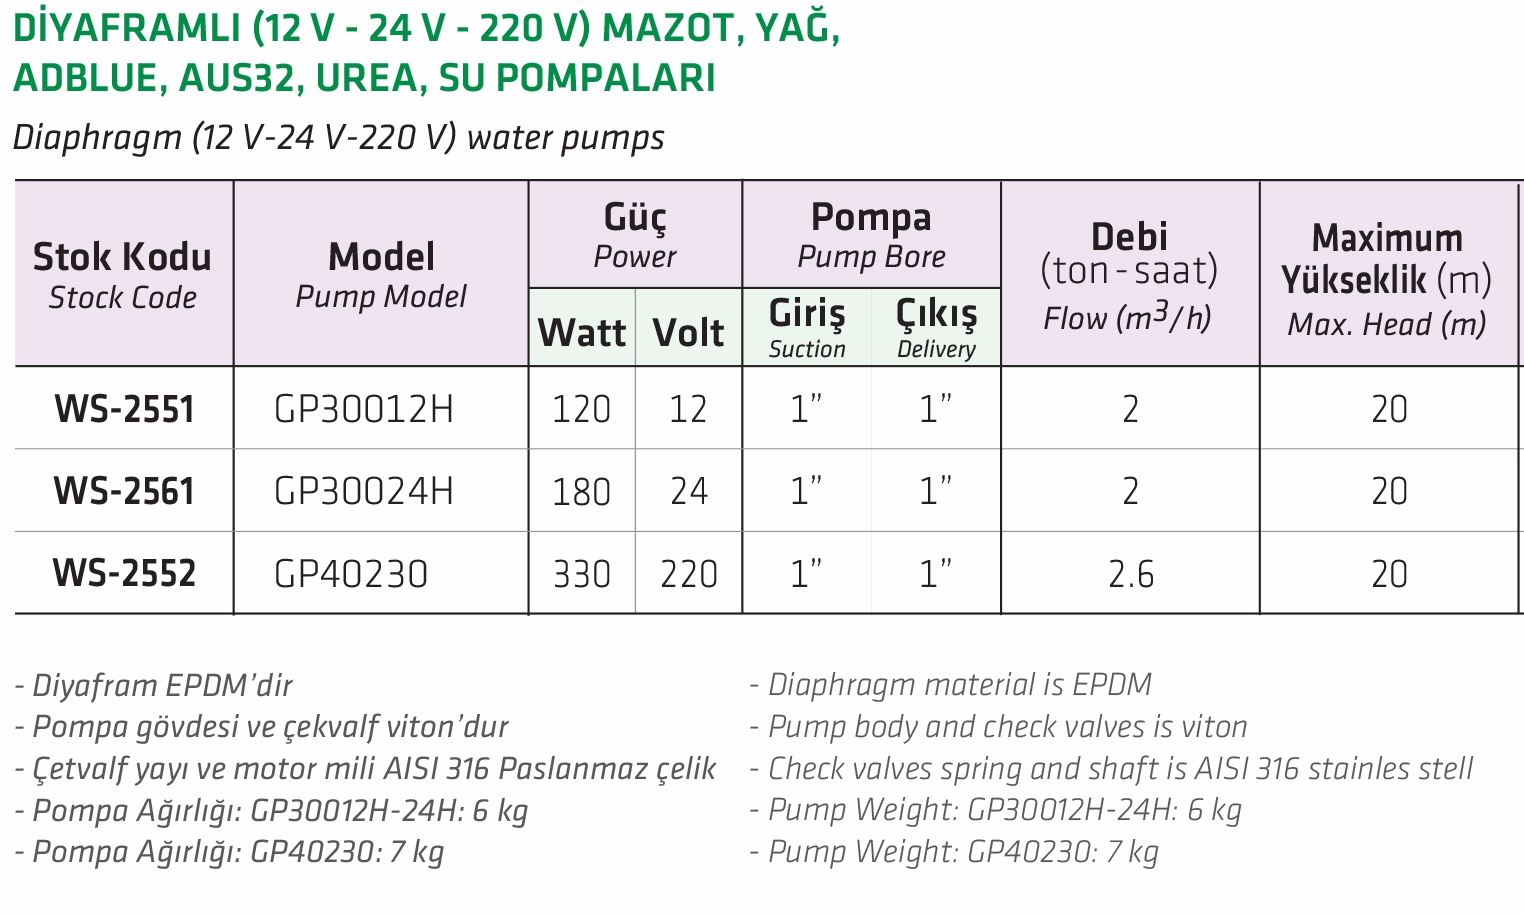 Water Sound GP30024H Diyaframlı 24V  Mazot, Yağ, Adblue, Aus32, Urea, Su Pompası